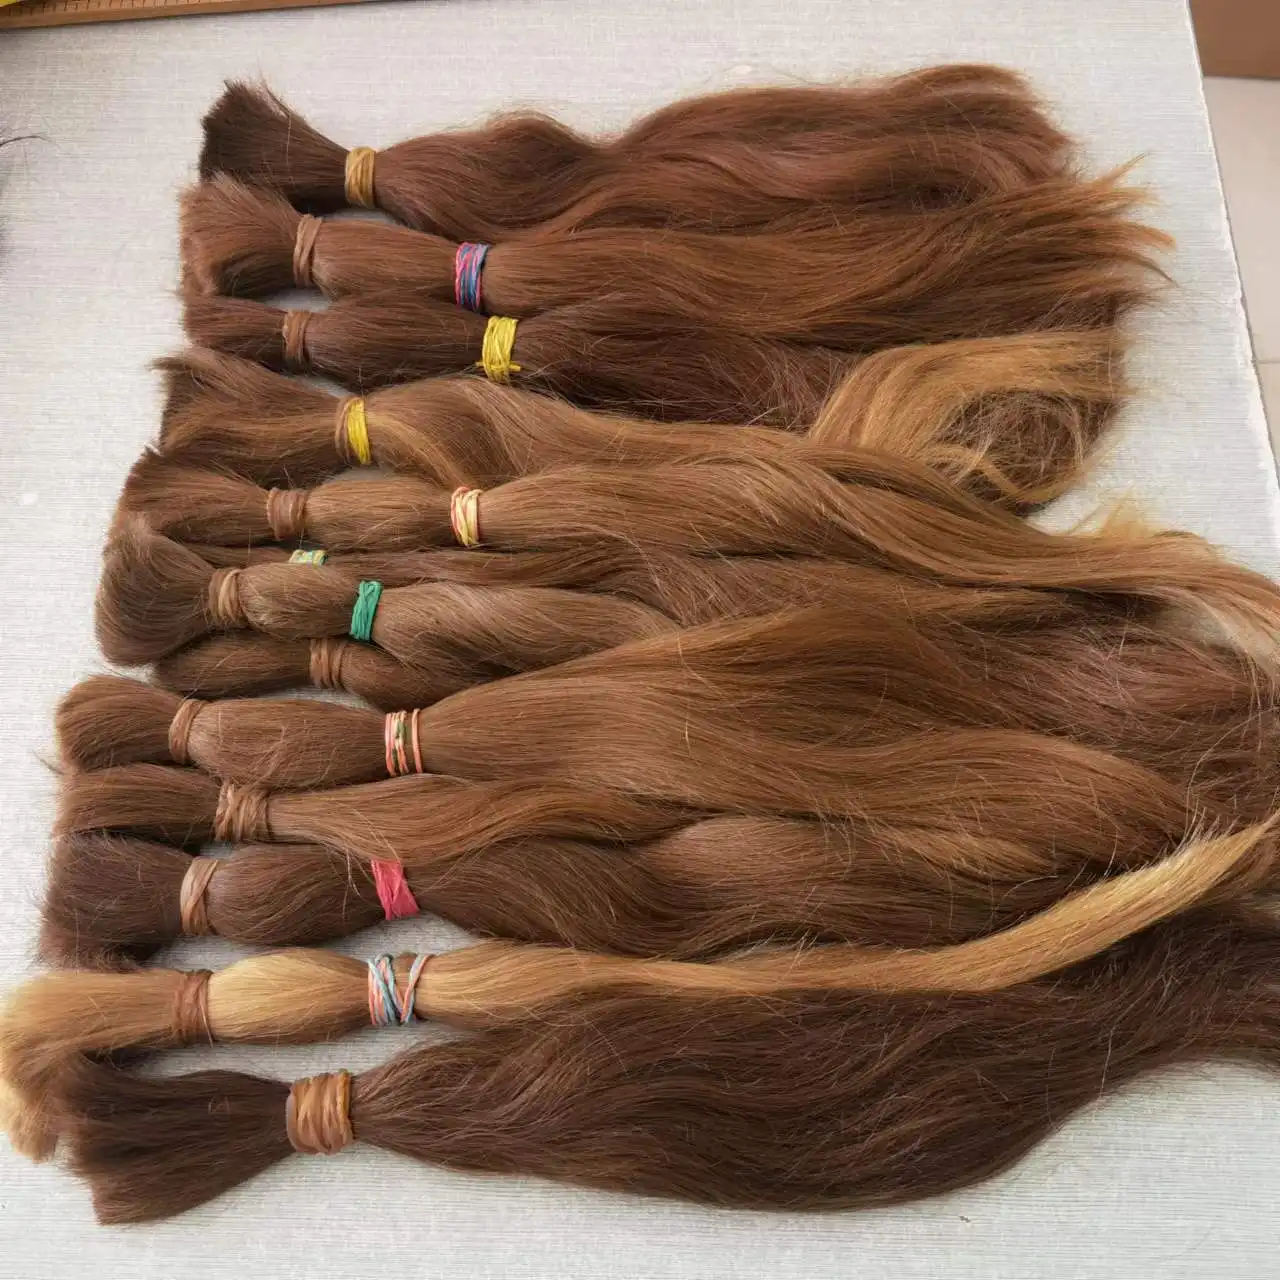 Commercio all'ingrosso vergine vergine capelli umani alla Remi fornitore della fabbrica Remi cuticola capelli russi capelli naturali marroni vergini